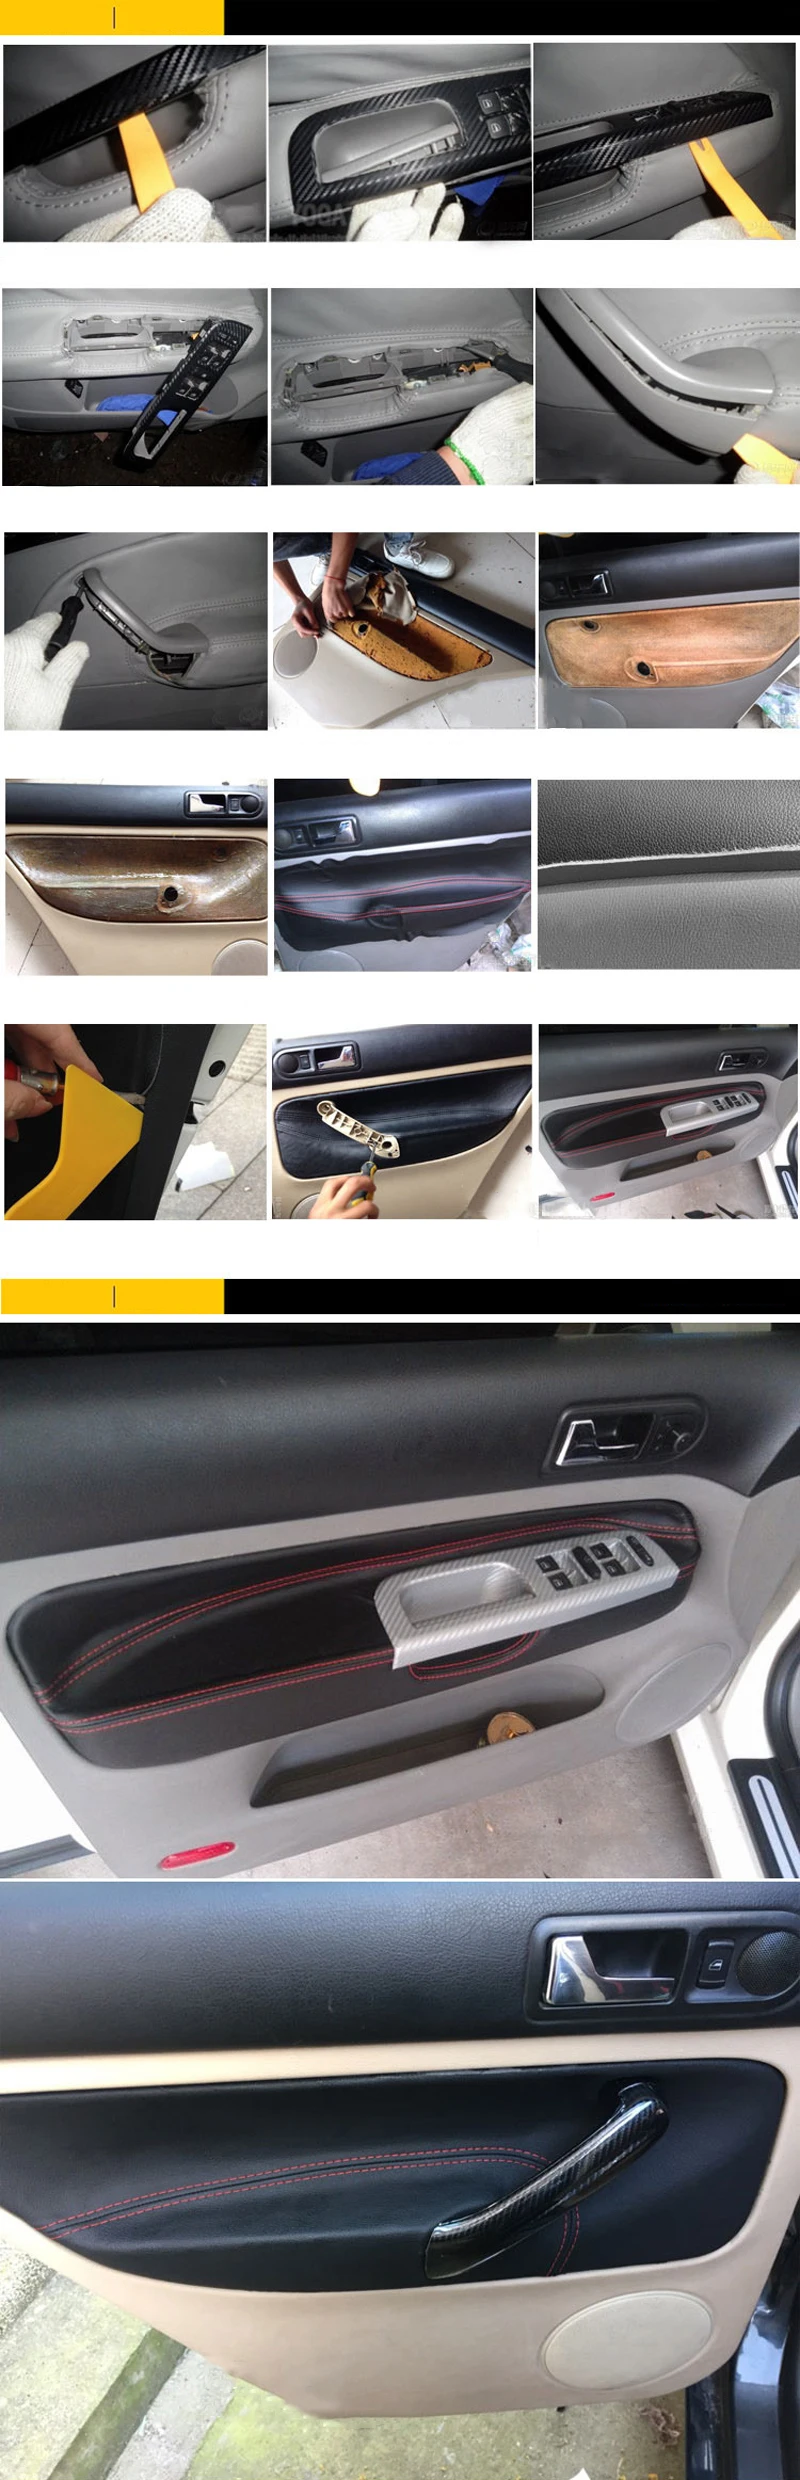 SRXTZM 4 шт. Автомобильная Защитная внутренняя дверная панель из микроволокна, кожаный чехол, аксессуар для Volkswagen MK4 Bora Golf 4 2002-2006